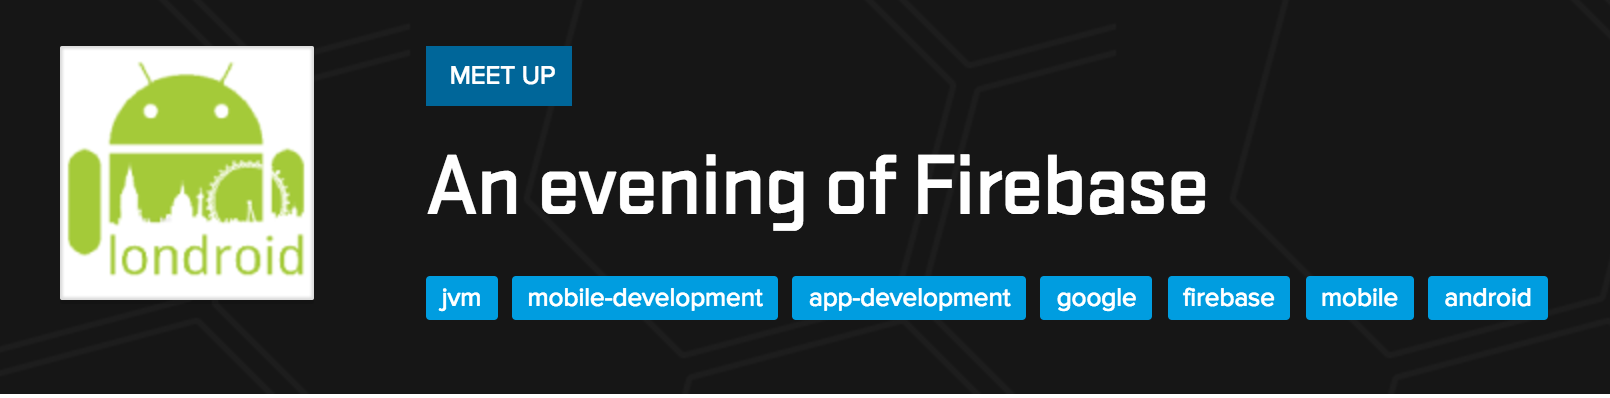 An evening of Firebase - event review